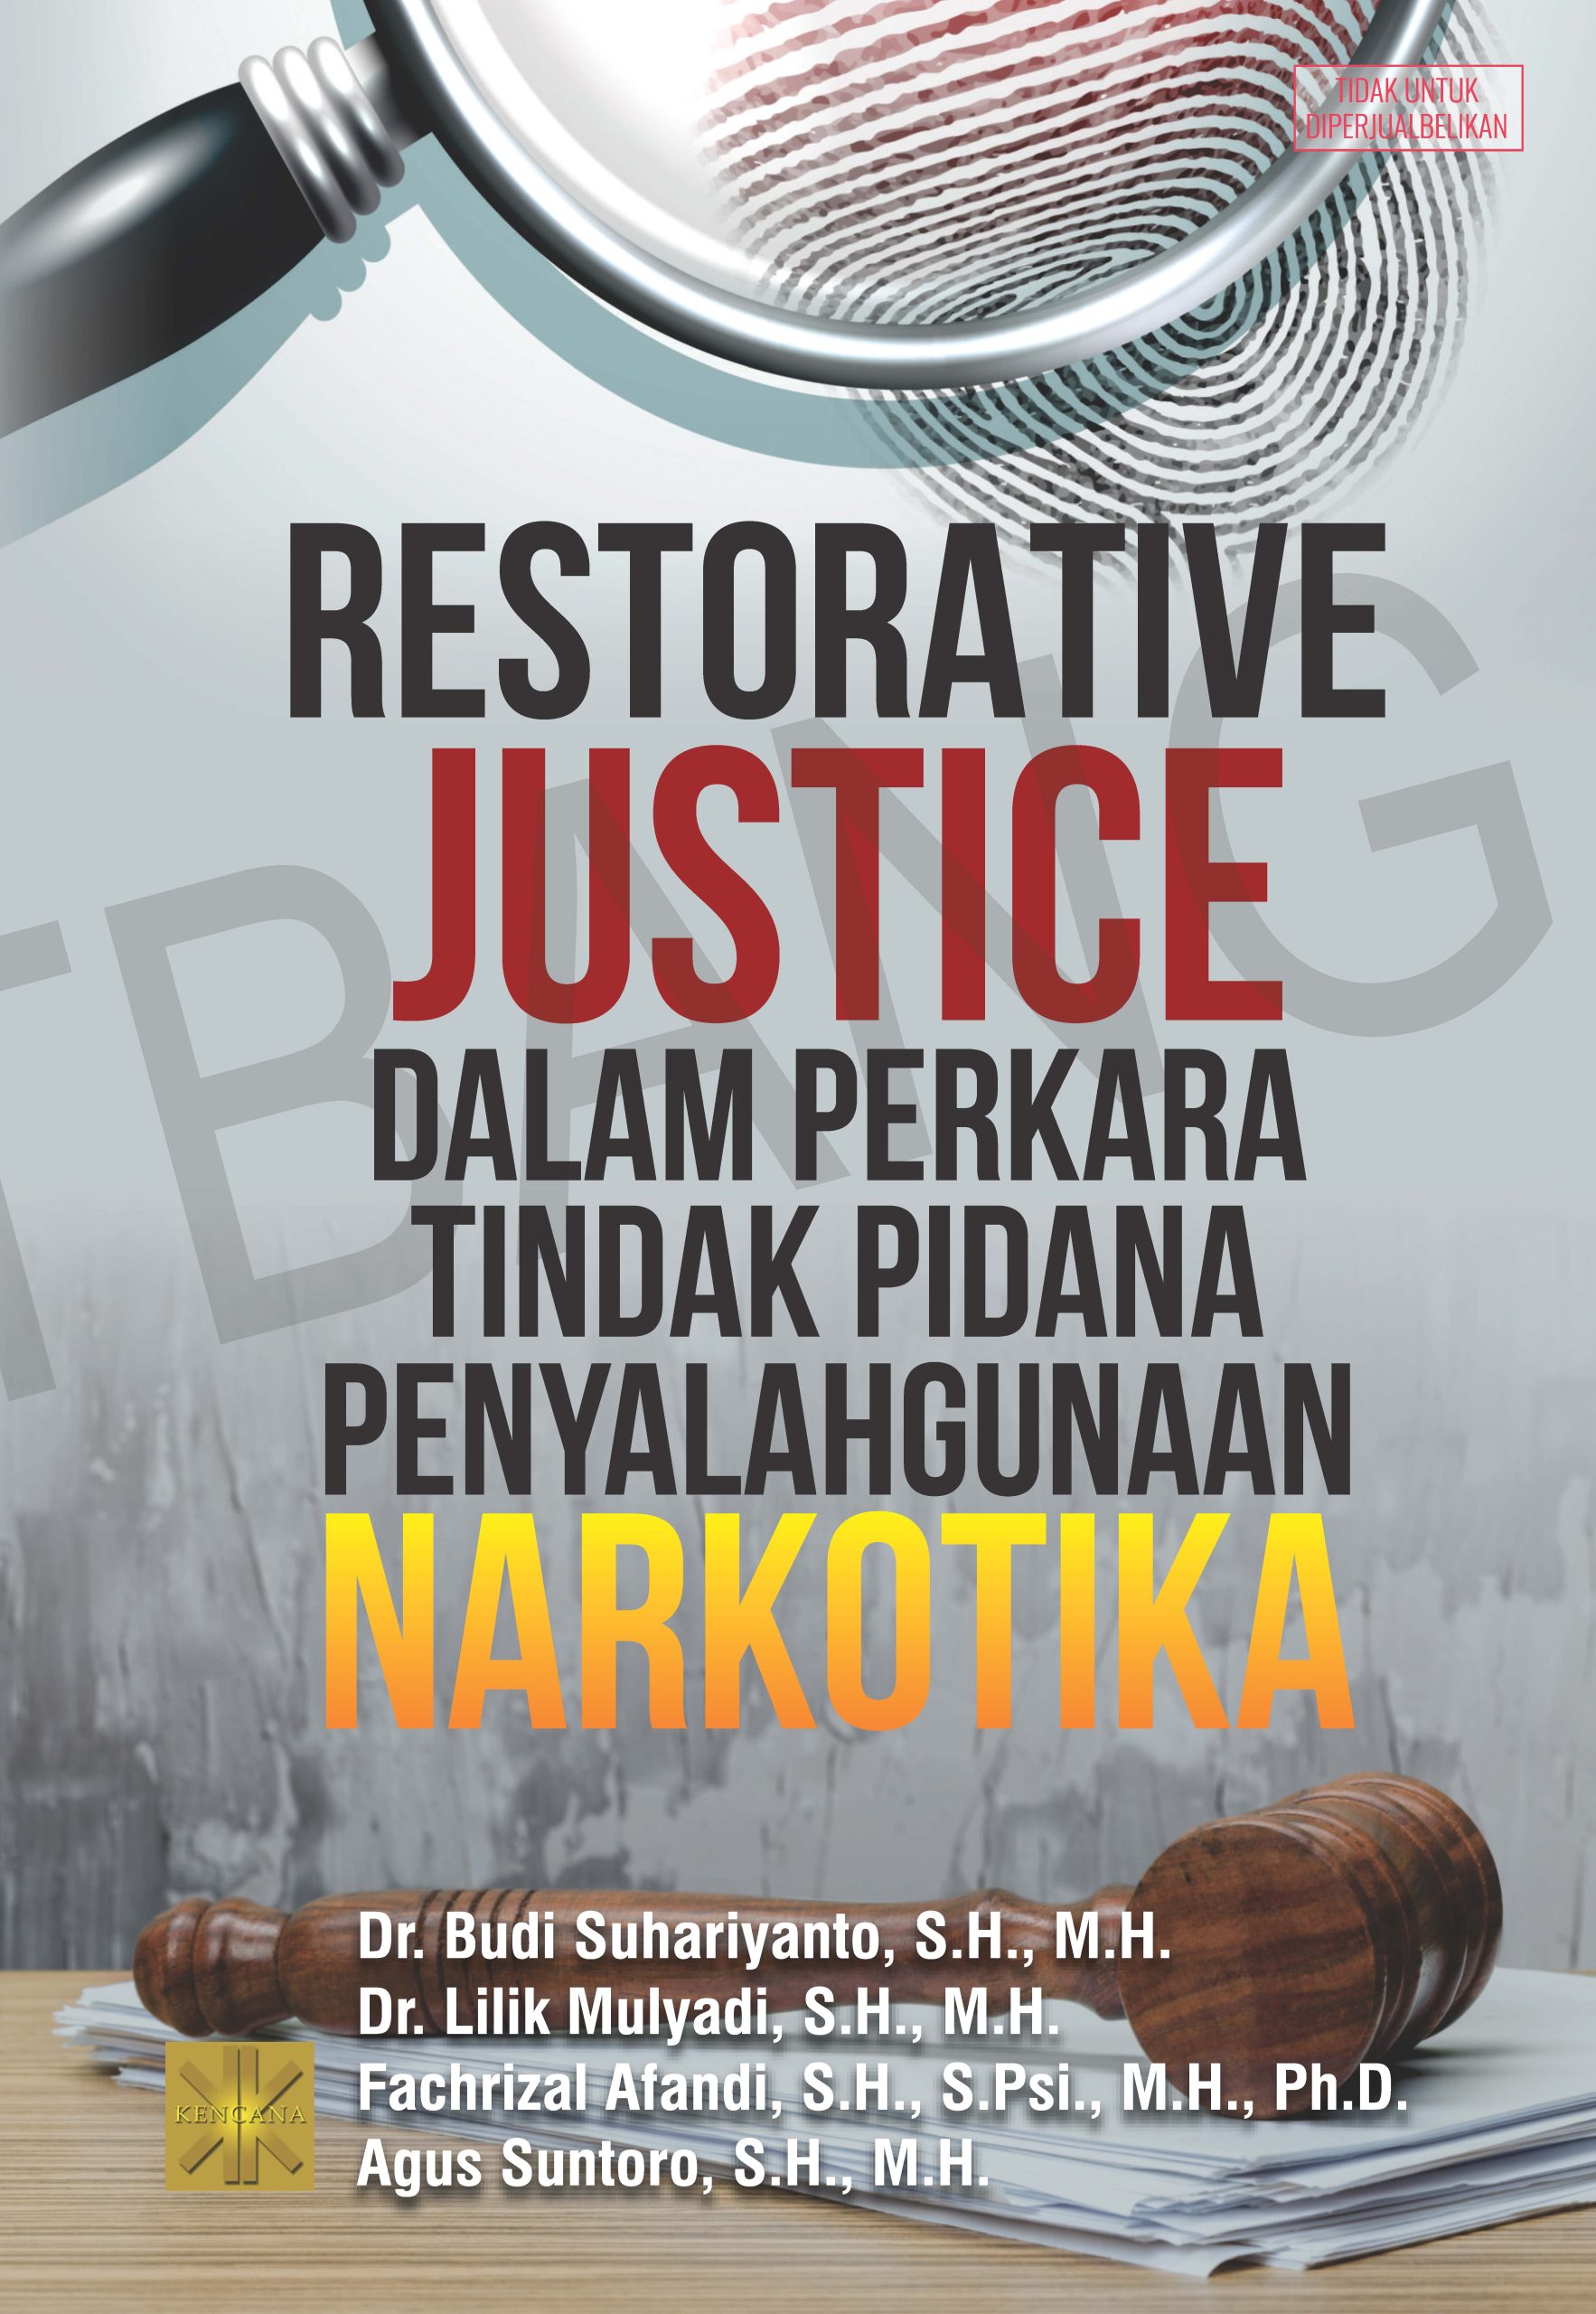 Restorative justice dalam perkara tindak pidana penyelahgunaan narkotika